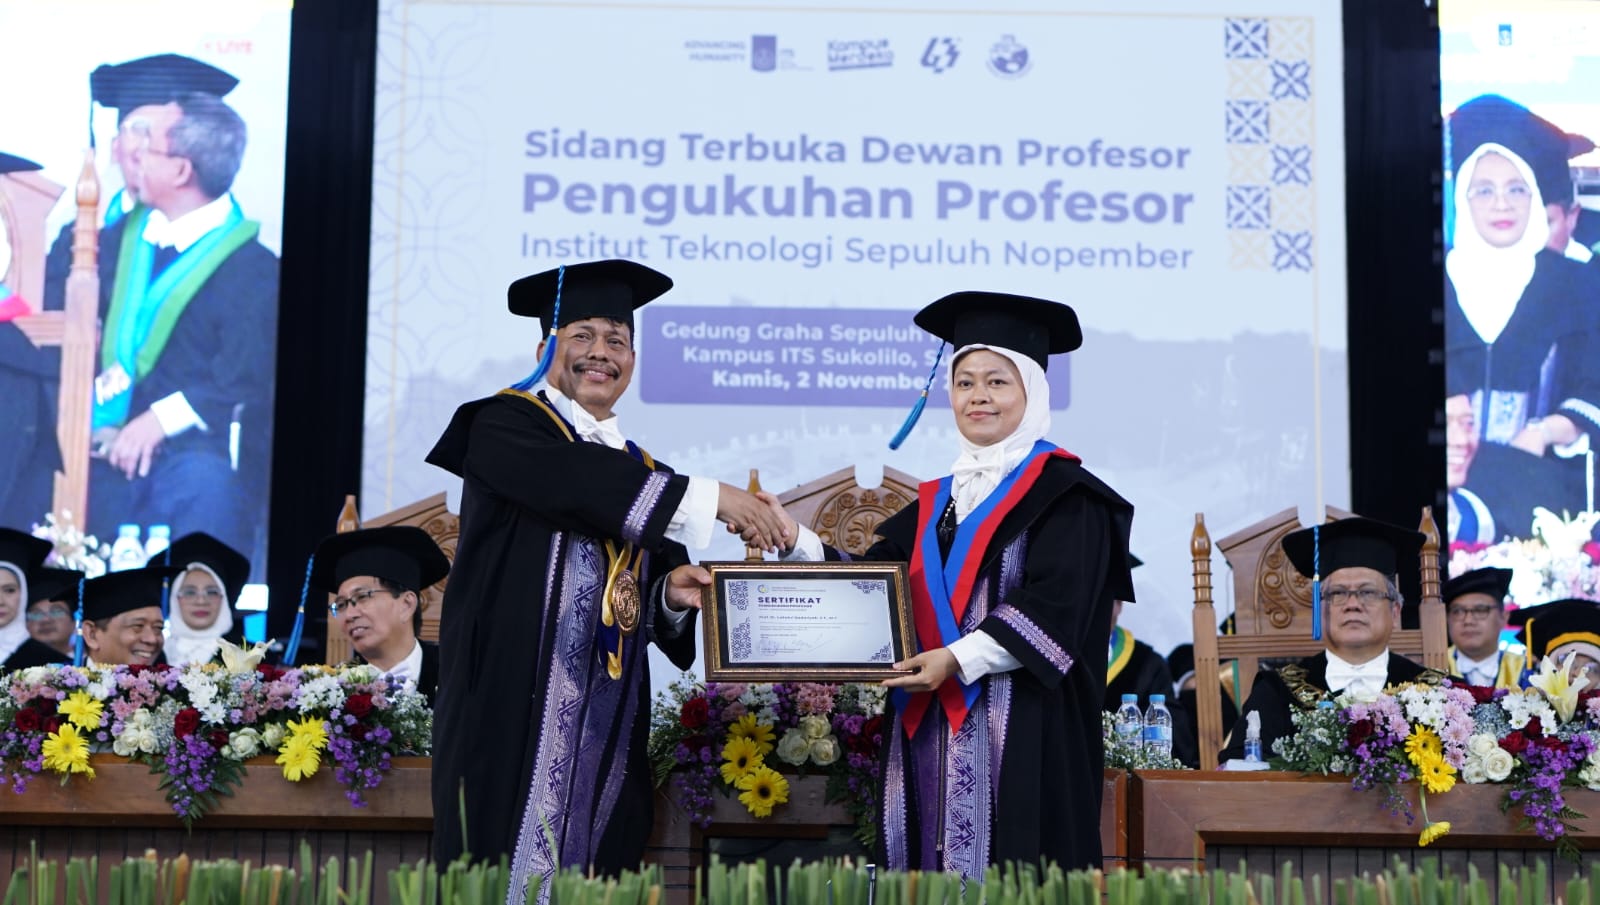 Prof Dr Ir Lailatul Qadariyah ST MT IPM saat dikukuhkan sebagai Profesor ke-171 ITS pada Sidang Terbuka Dewan Profesor ITS